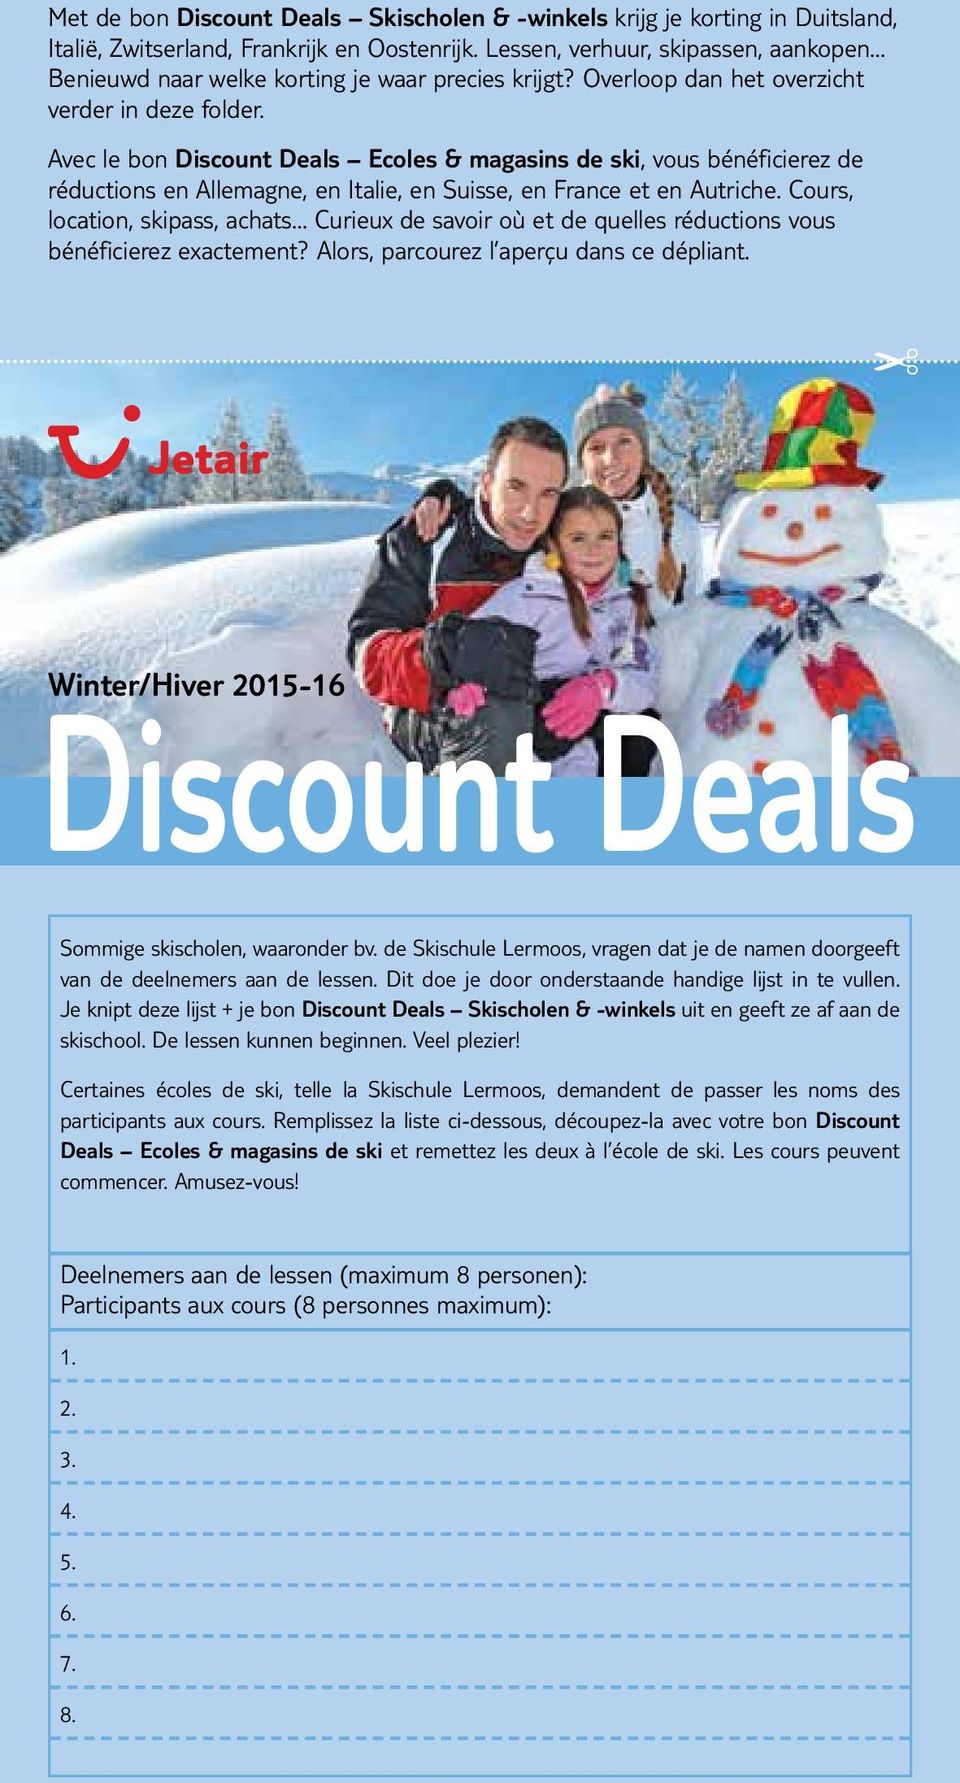 Avec le bon Discount Deals Ecoles & magasins de ski, vous bénéficierez de réductions en Allemagne, en Italie, en Suisse, en France et en Autriche.